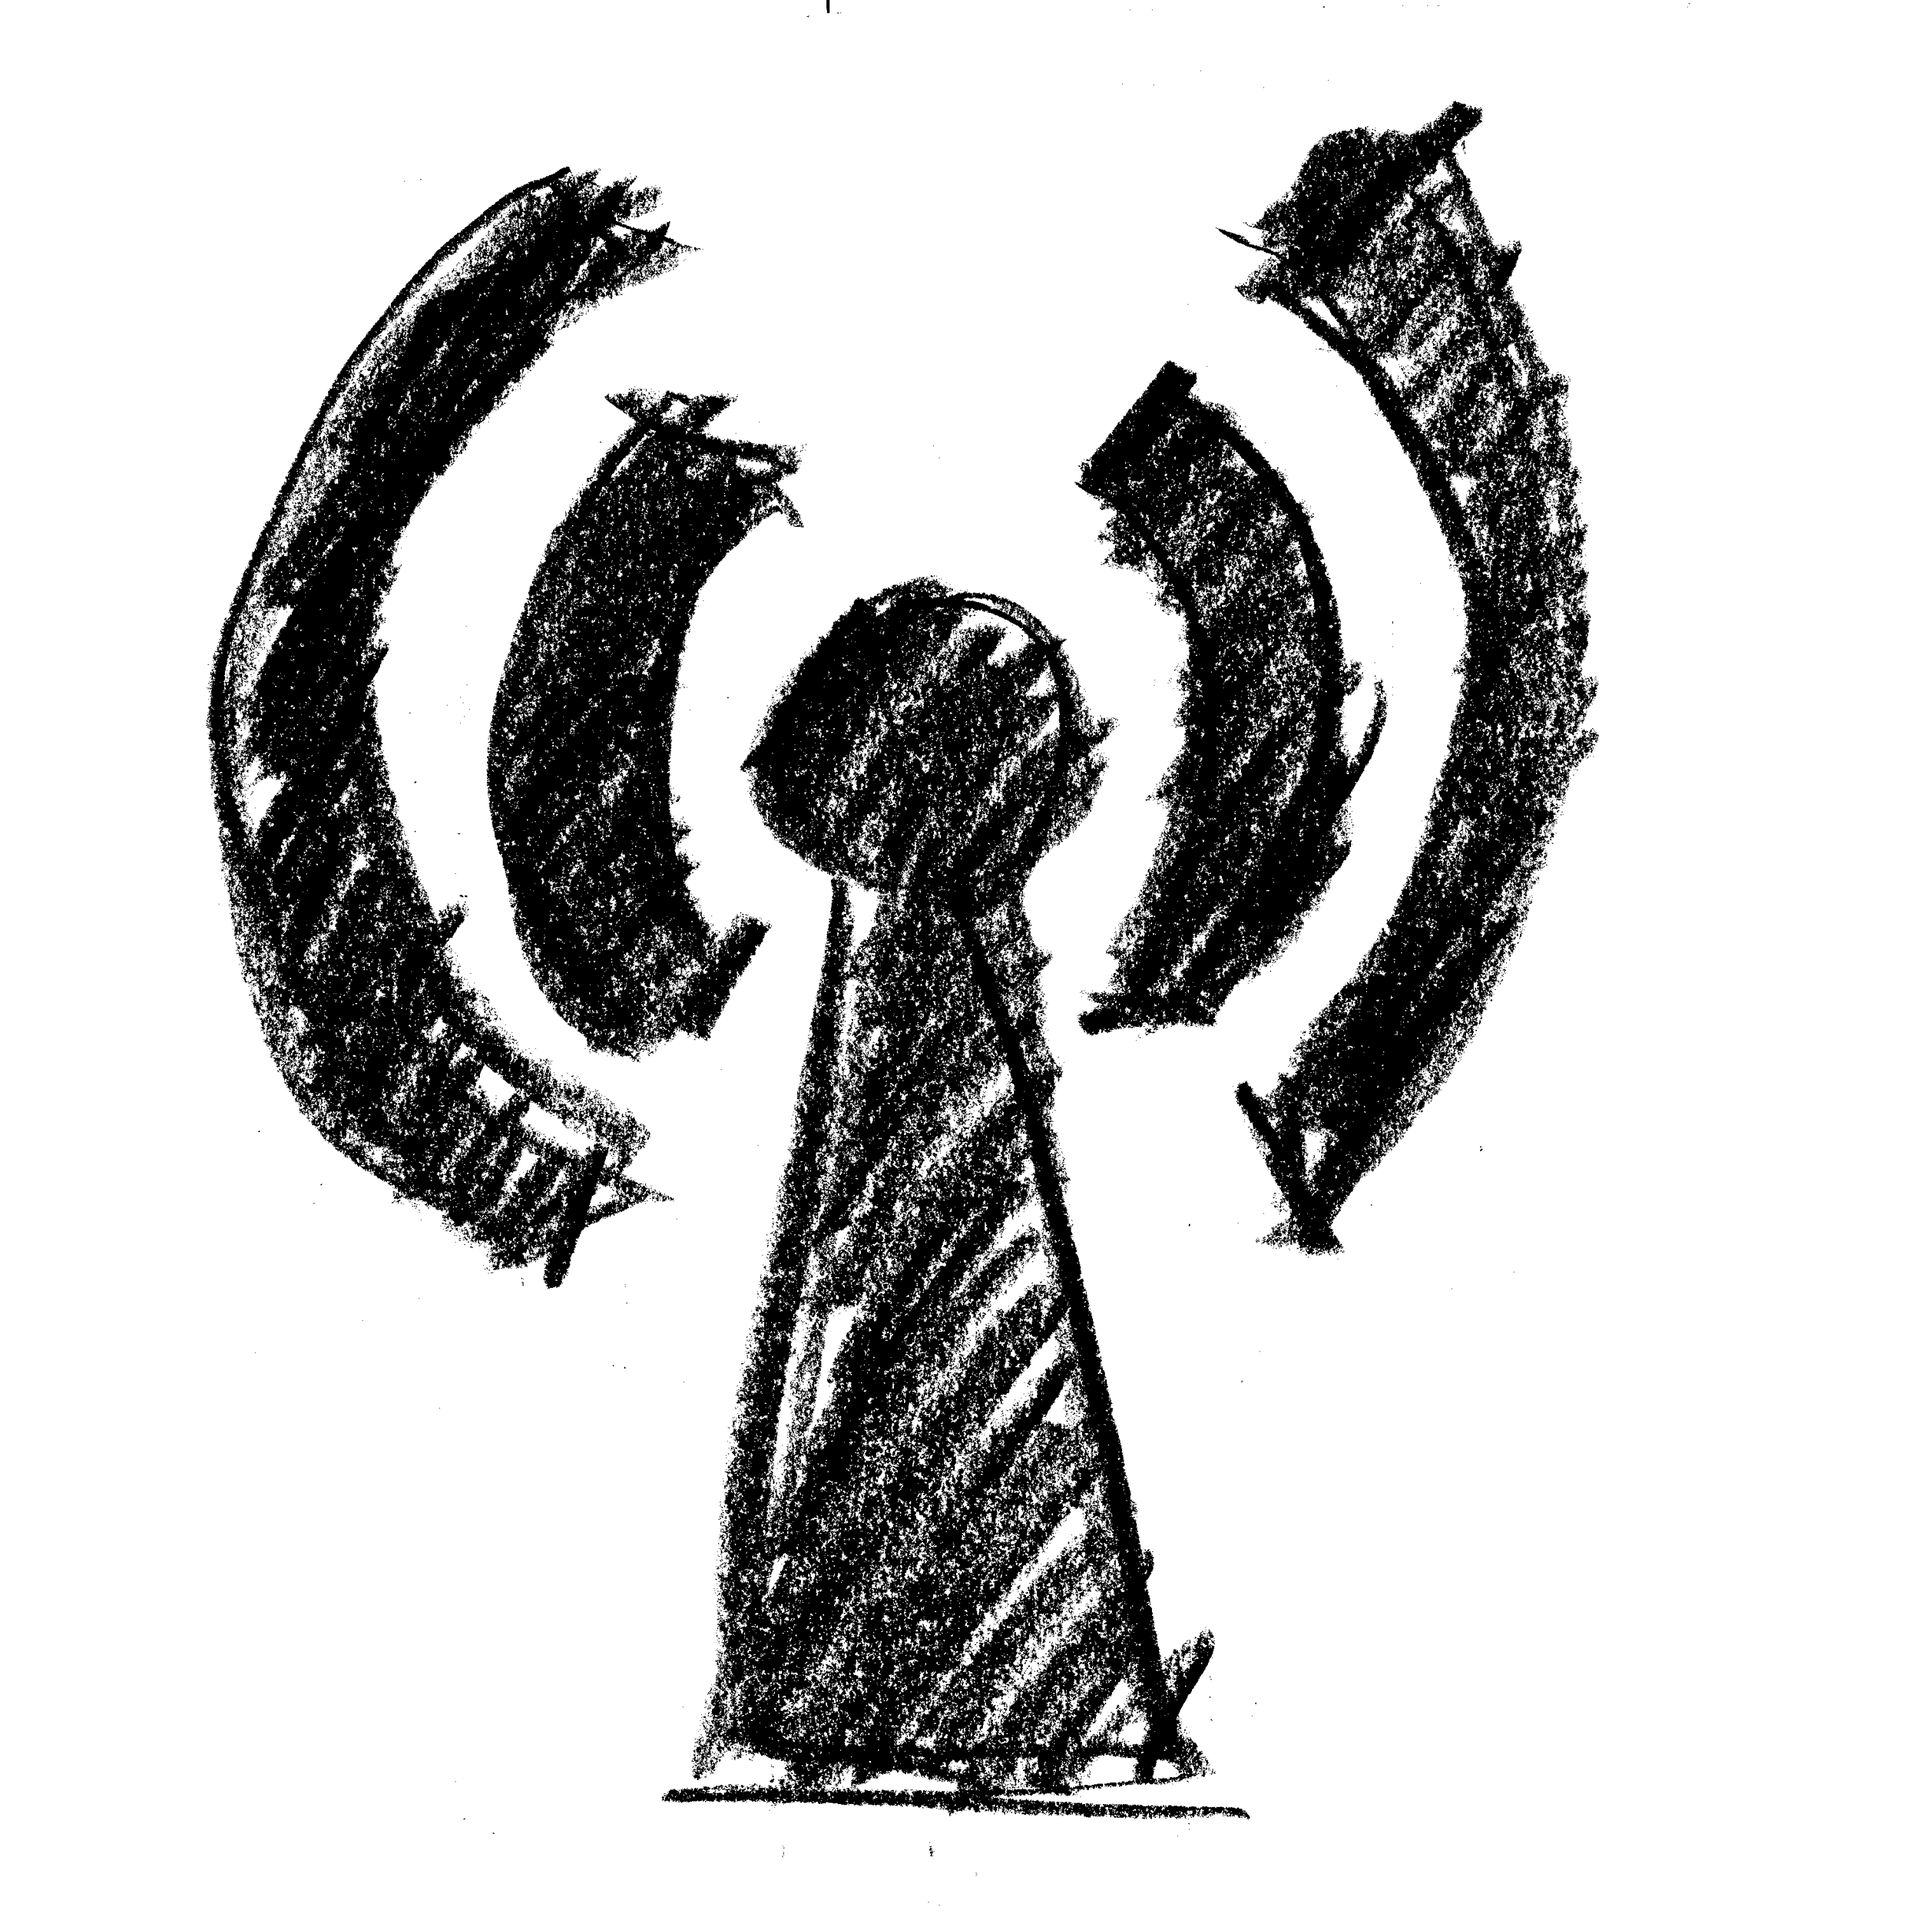 Grafik: gezeichnetes WLAN-Zeichen mit Kegel als Mittelpunkt, Bildnachweis: geralt auf pixabay, https://pixabay.com/de/illustrations/senden-empfangen-wlan-sender-2440274/